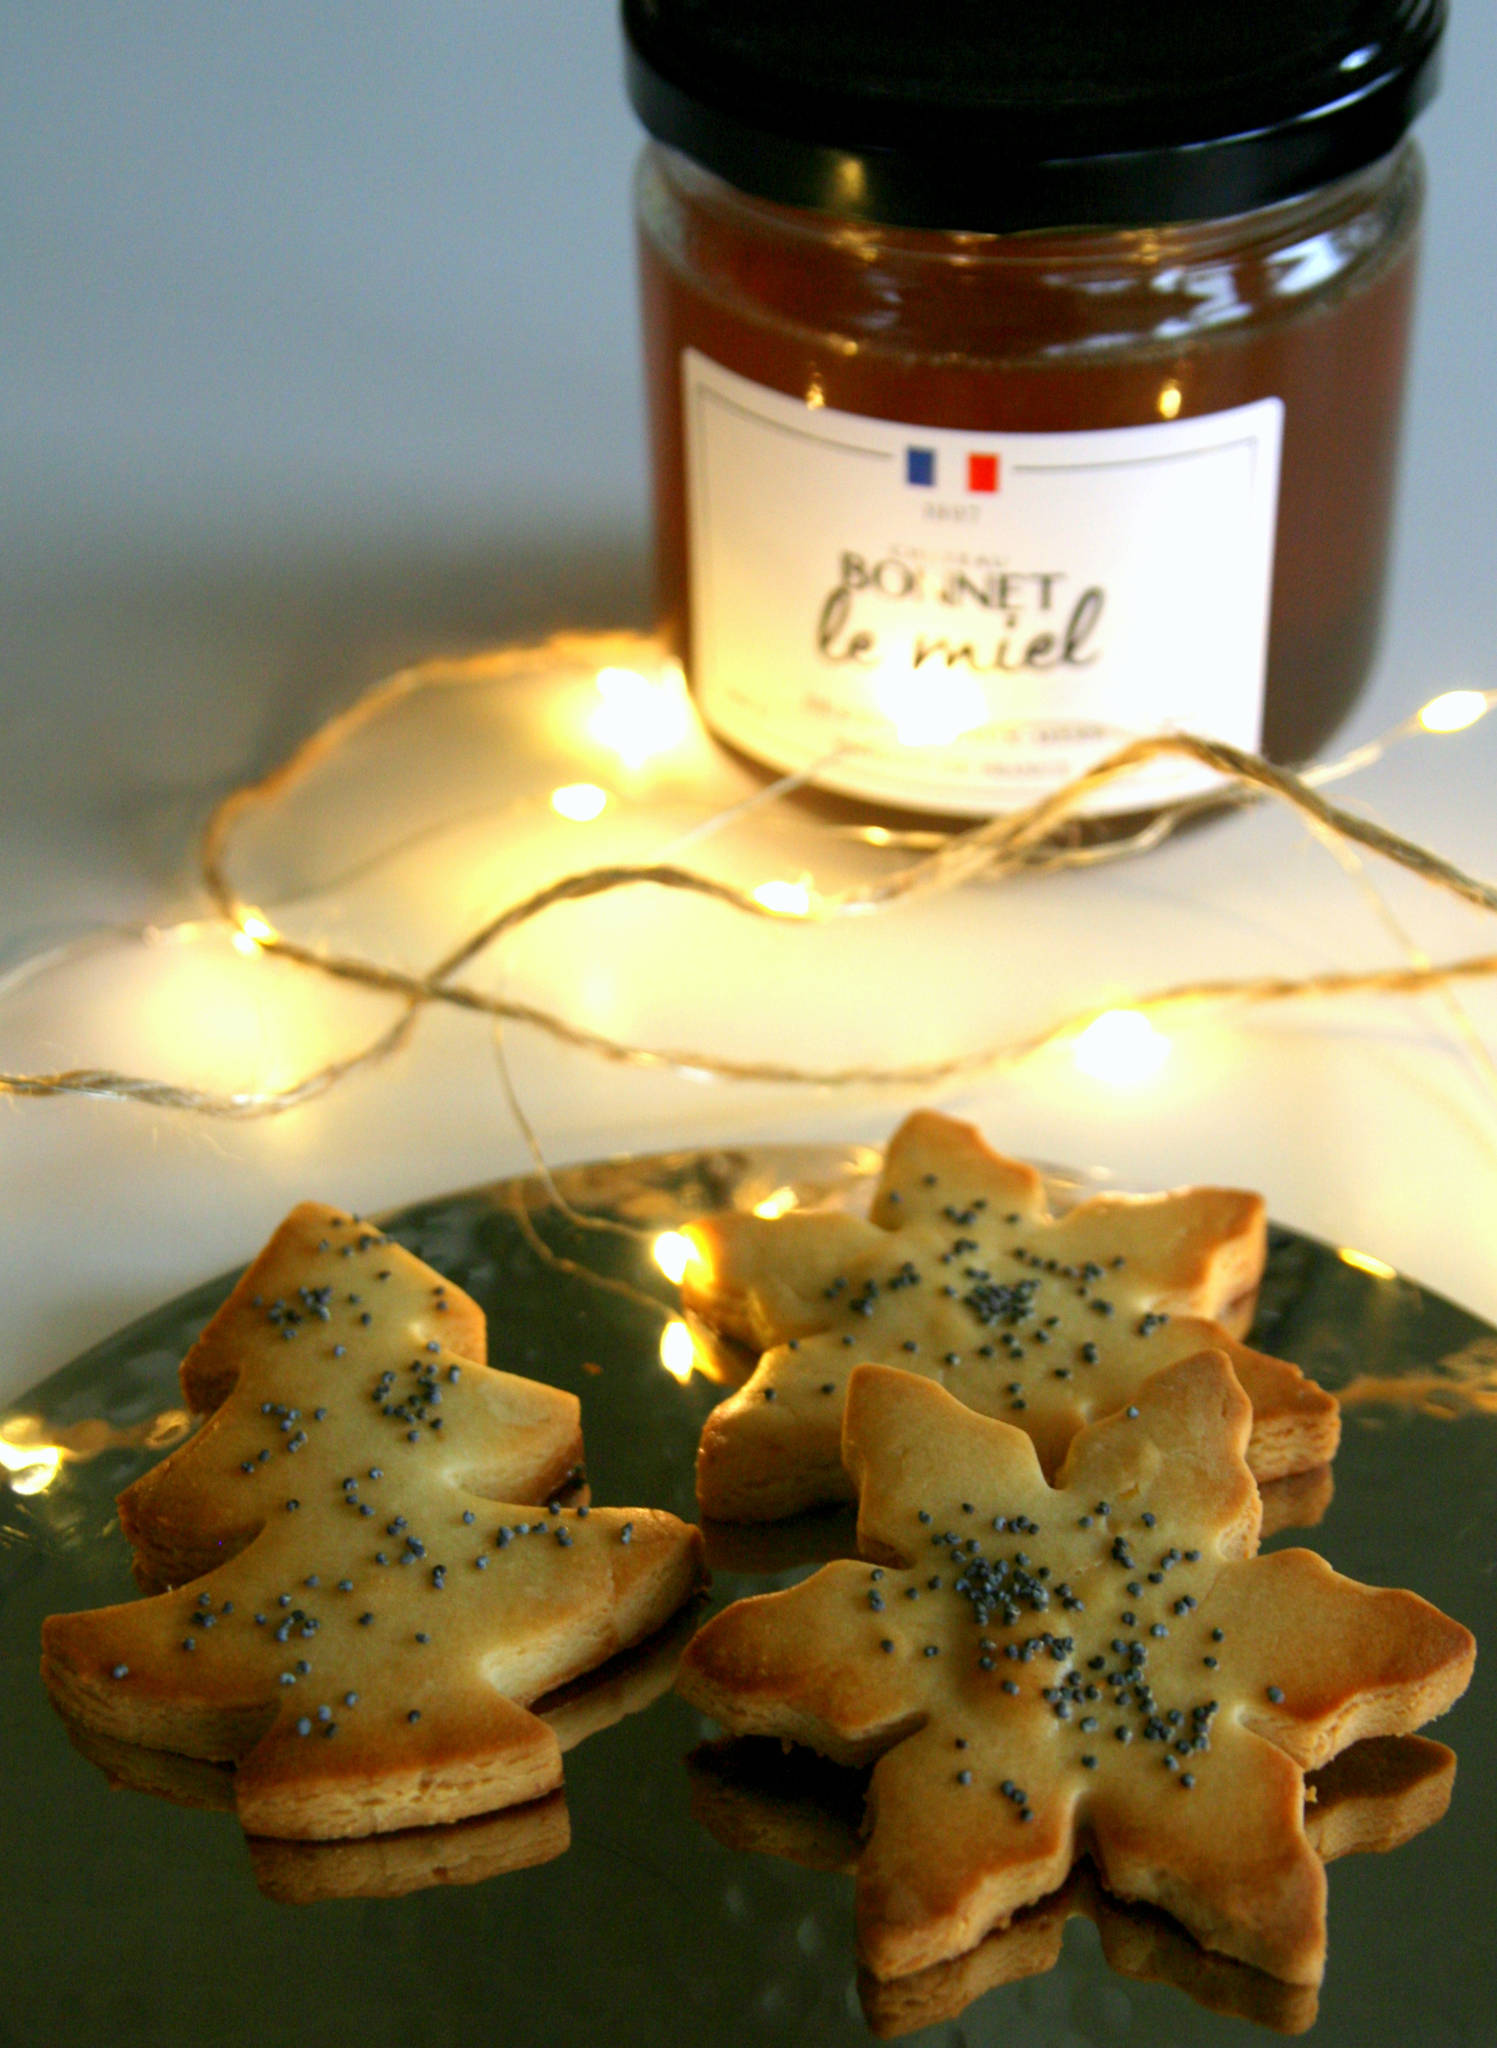 Biscuits de Noël au citron et miel de Bonnet